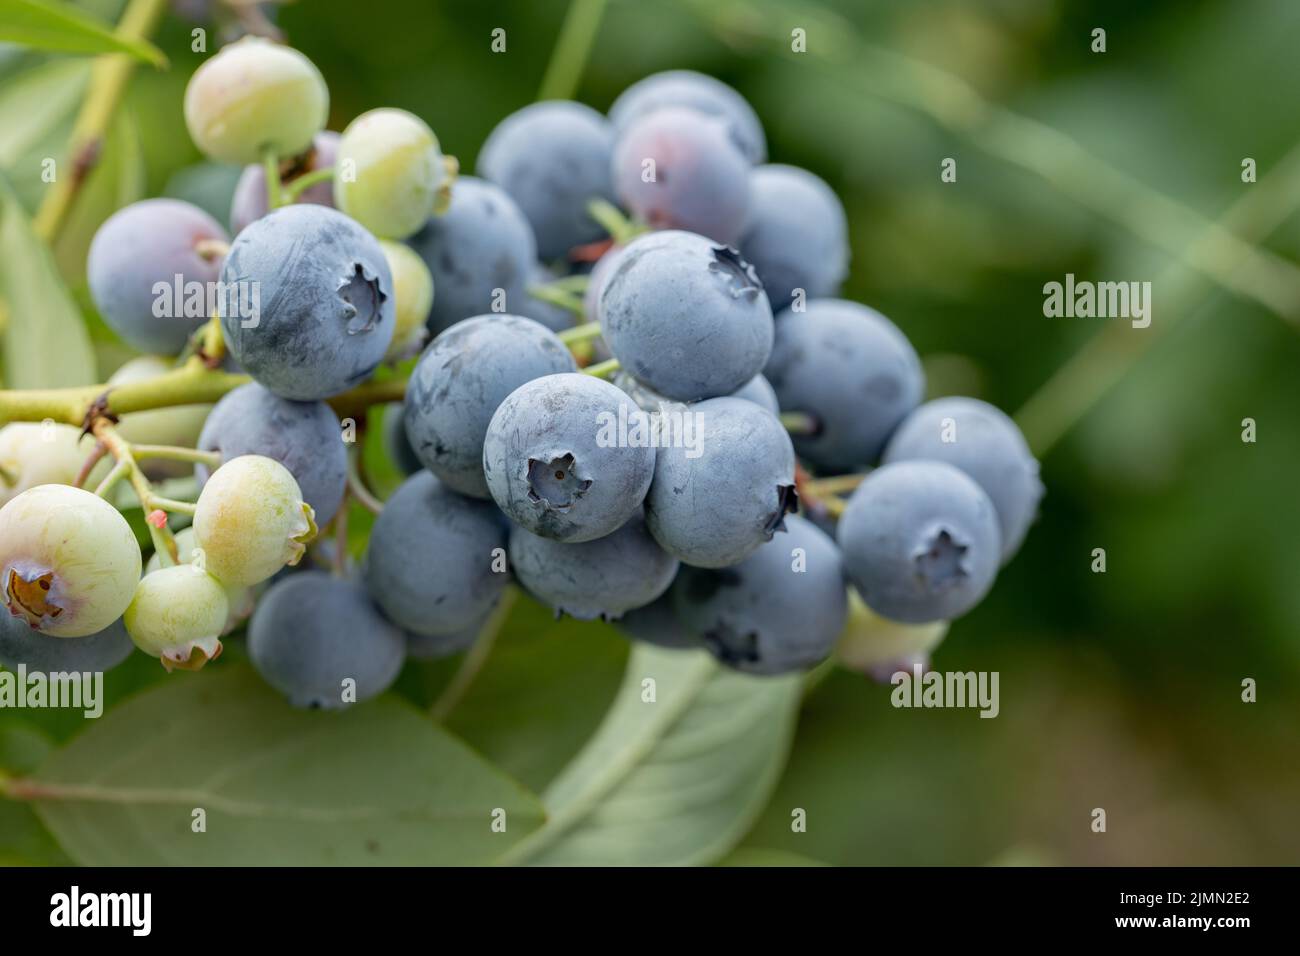 Heidelbeeren - leckere, gesunde Beerenfrucht. Vaccinium corymbosum, hohe huckleberry. Blaue reife Frucht auf der gesunden grünen Pflanze. Lebensmittelplantage - Stockfoto